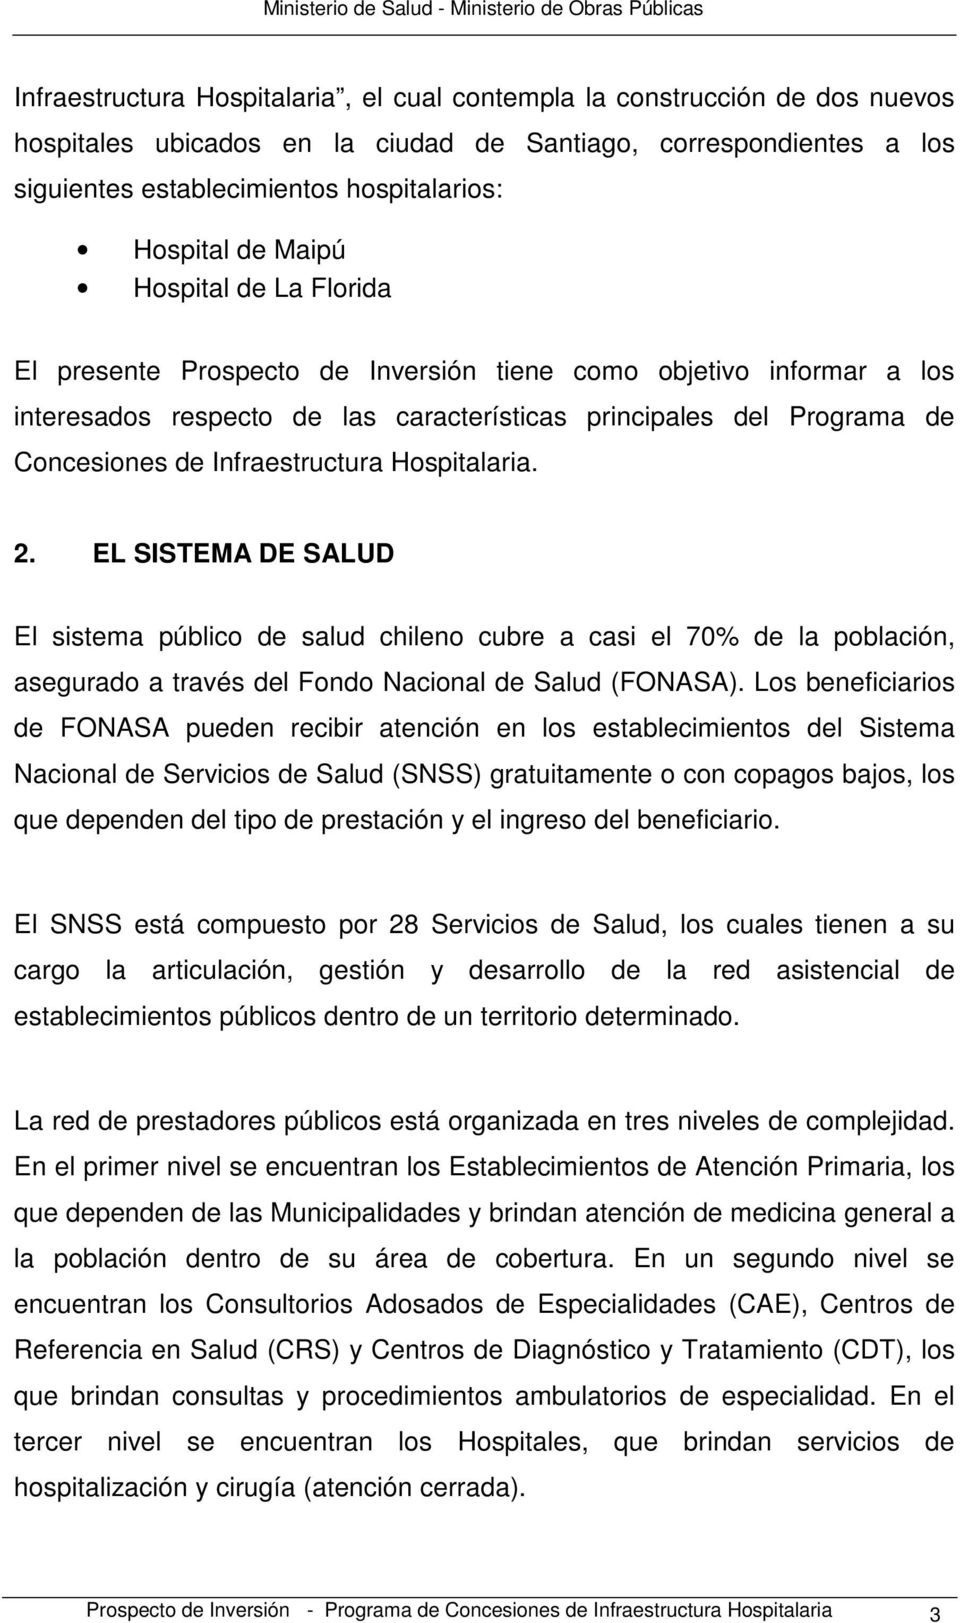 Infraestructura Hospitalaria. 2. EL SISTEMA DE SALUD El sistema público de salud chileno cubre a casi el 70% de la población, asegurado a través del Fondo Nacional de Salud (FONASA).